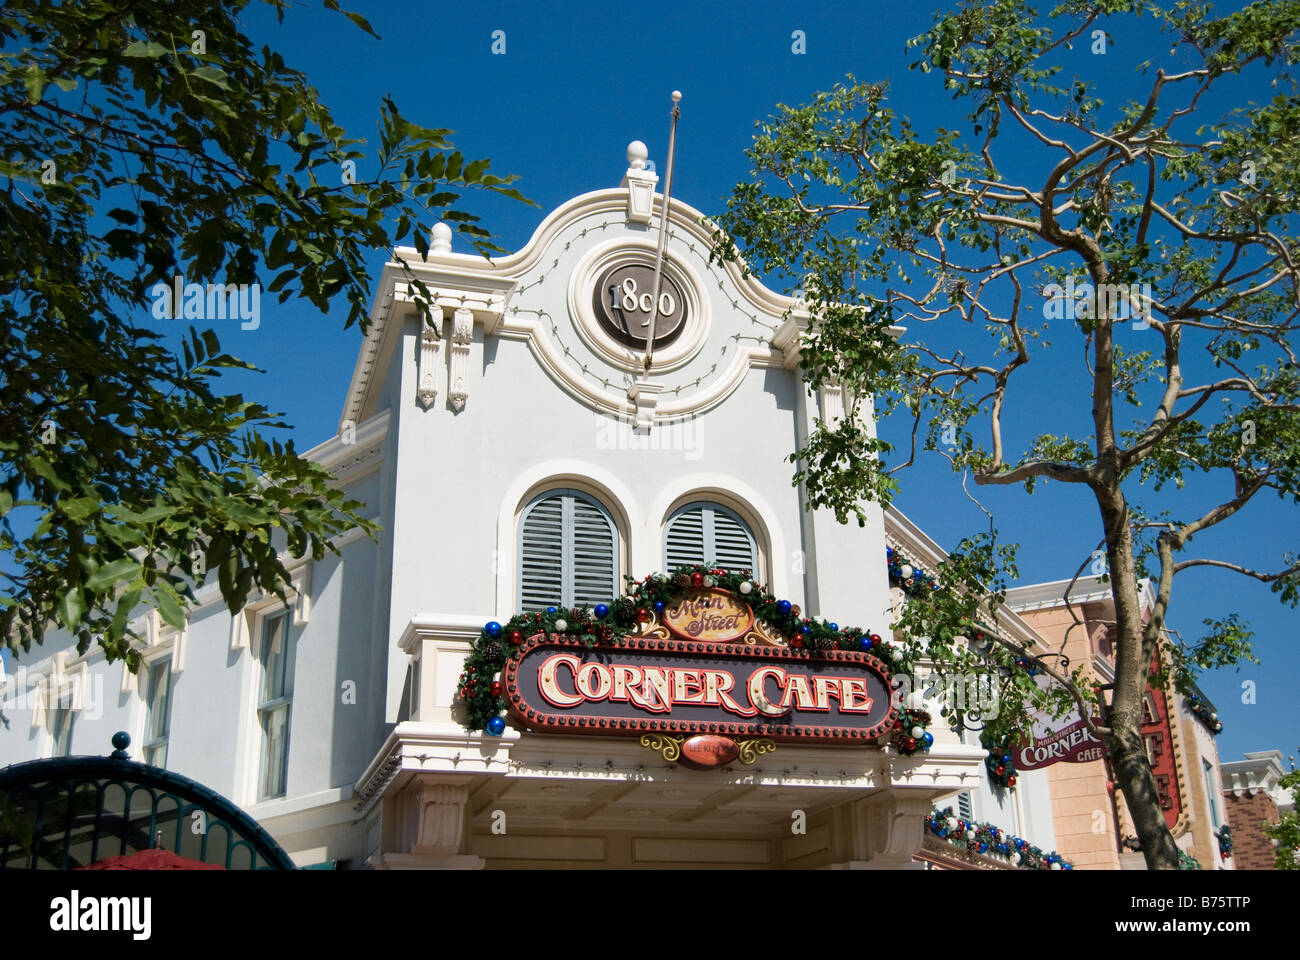 Corner Cafe, Main Street, Hong Kong Disneyland Resort, l'île de Lantau, Hong Kong, République populaire de Chine Banque D'Images